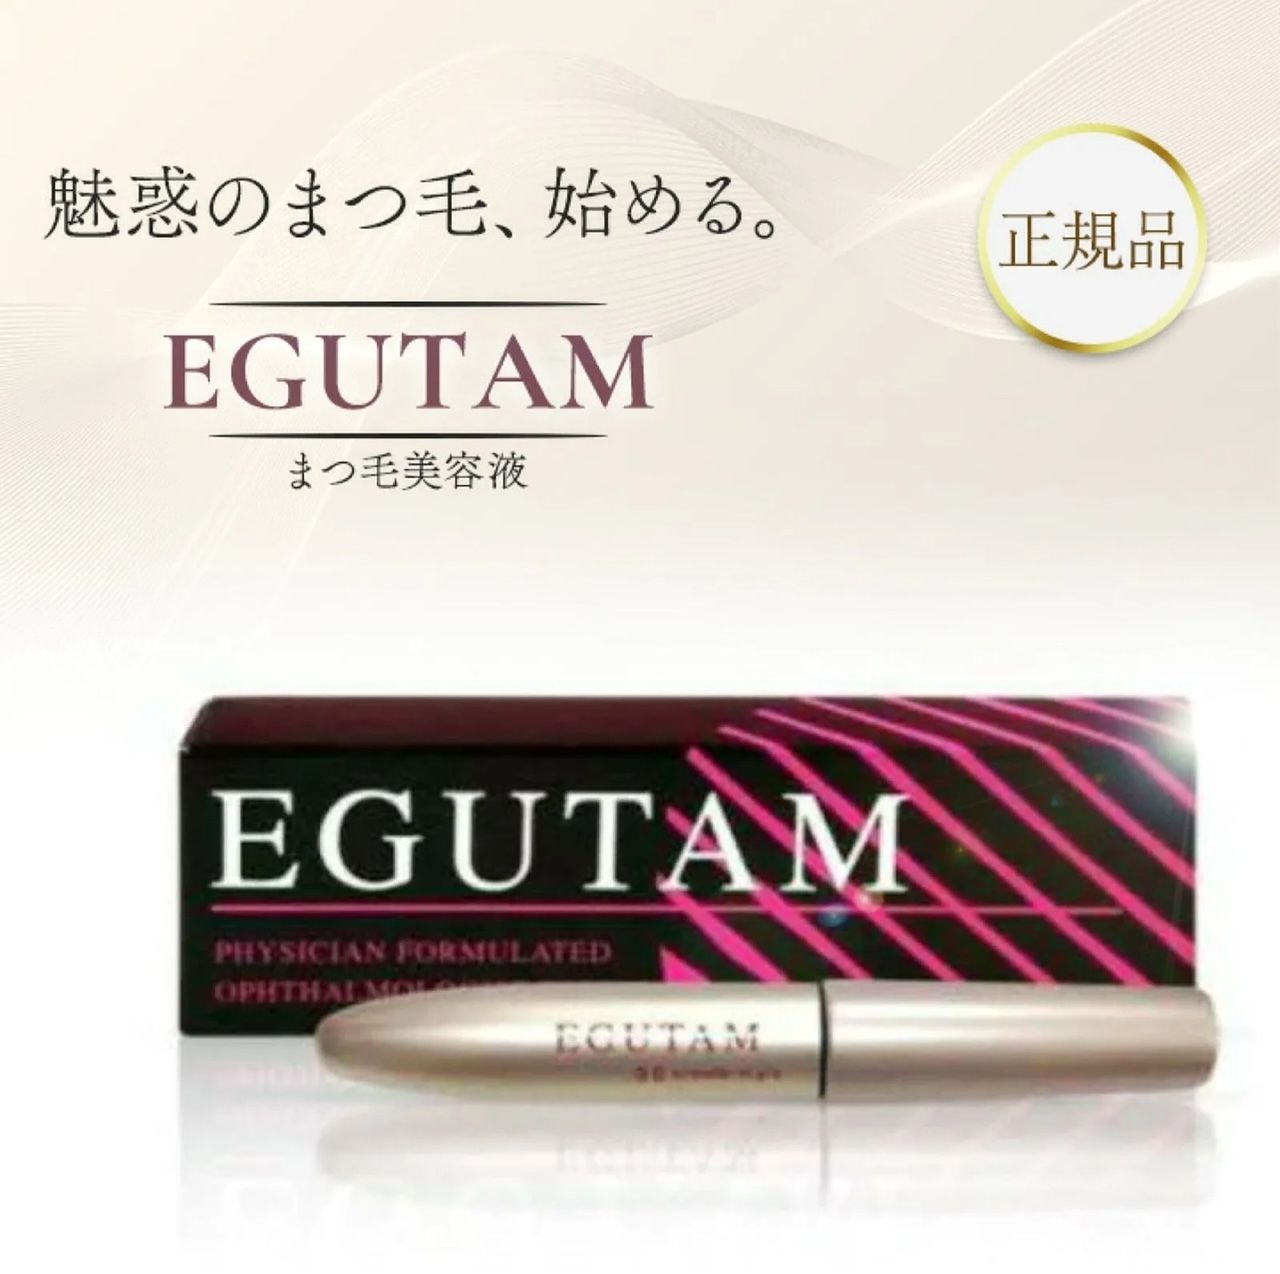 スキンケア/基礎化粧品EGUTAM 新品